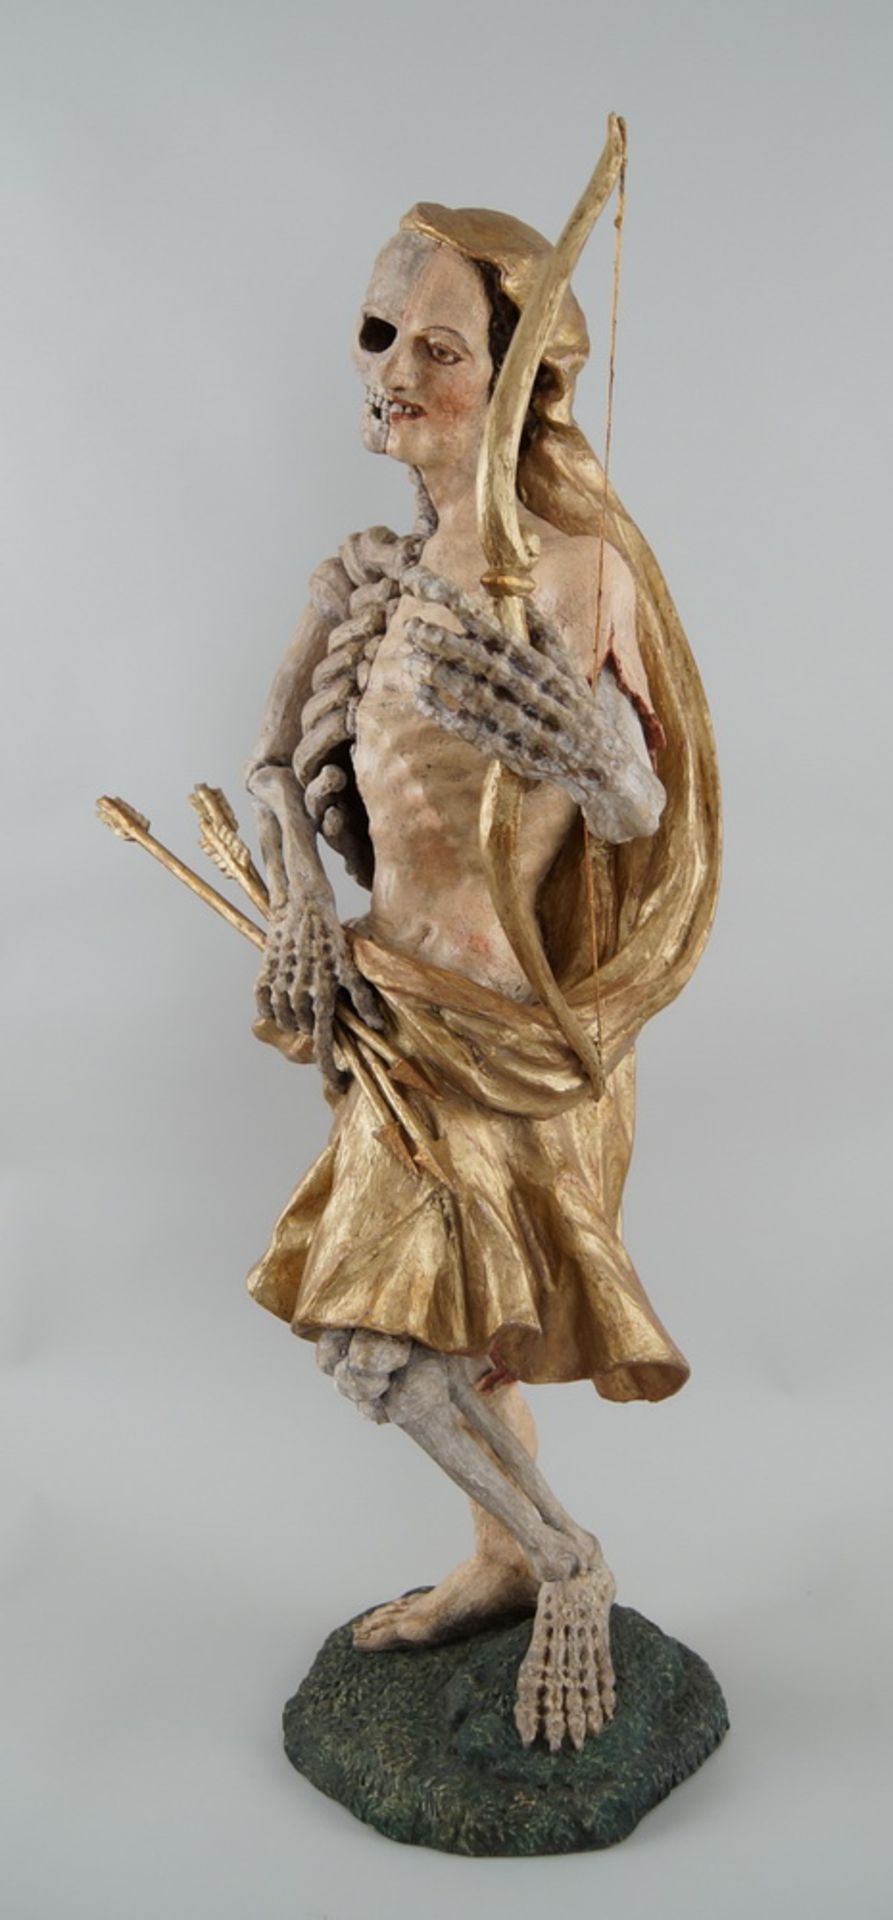 Memento Mori Skulptur mit Pfeil und Bogen, stehende, skelettierte Figur in Holz geschnitzt - Bild 5 aus 10